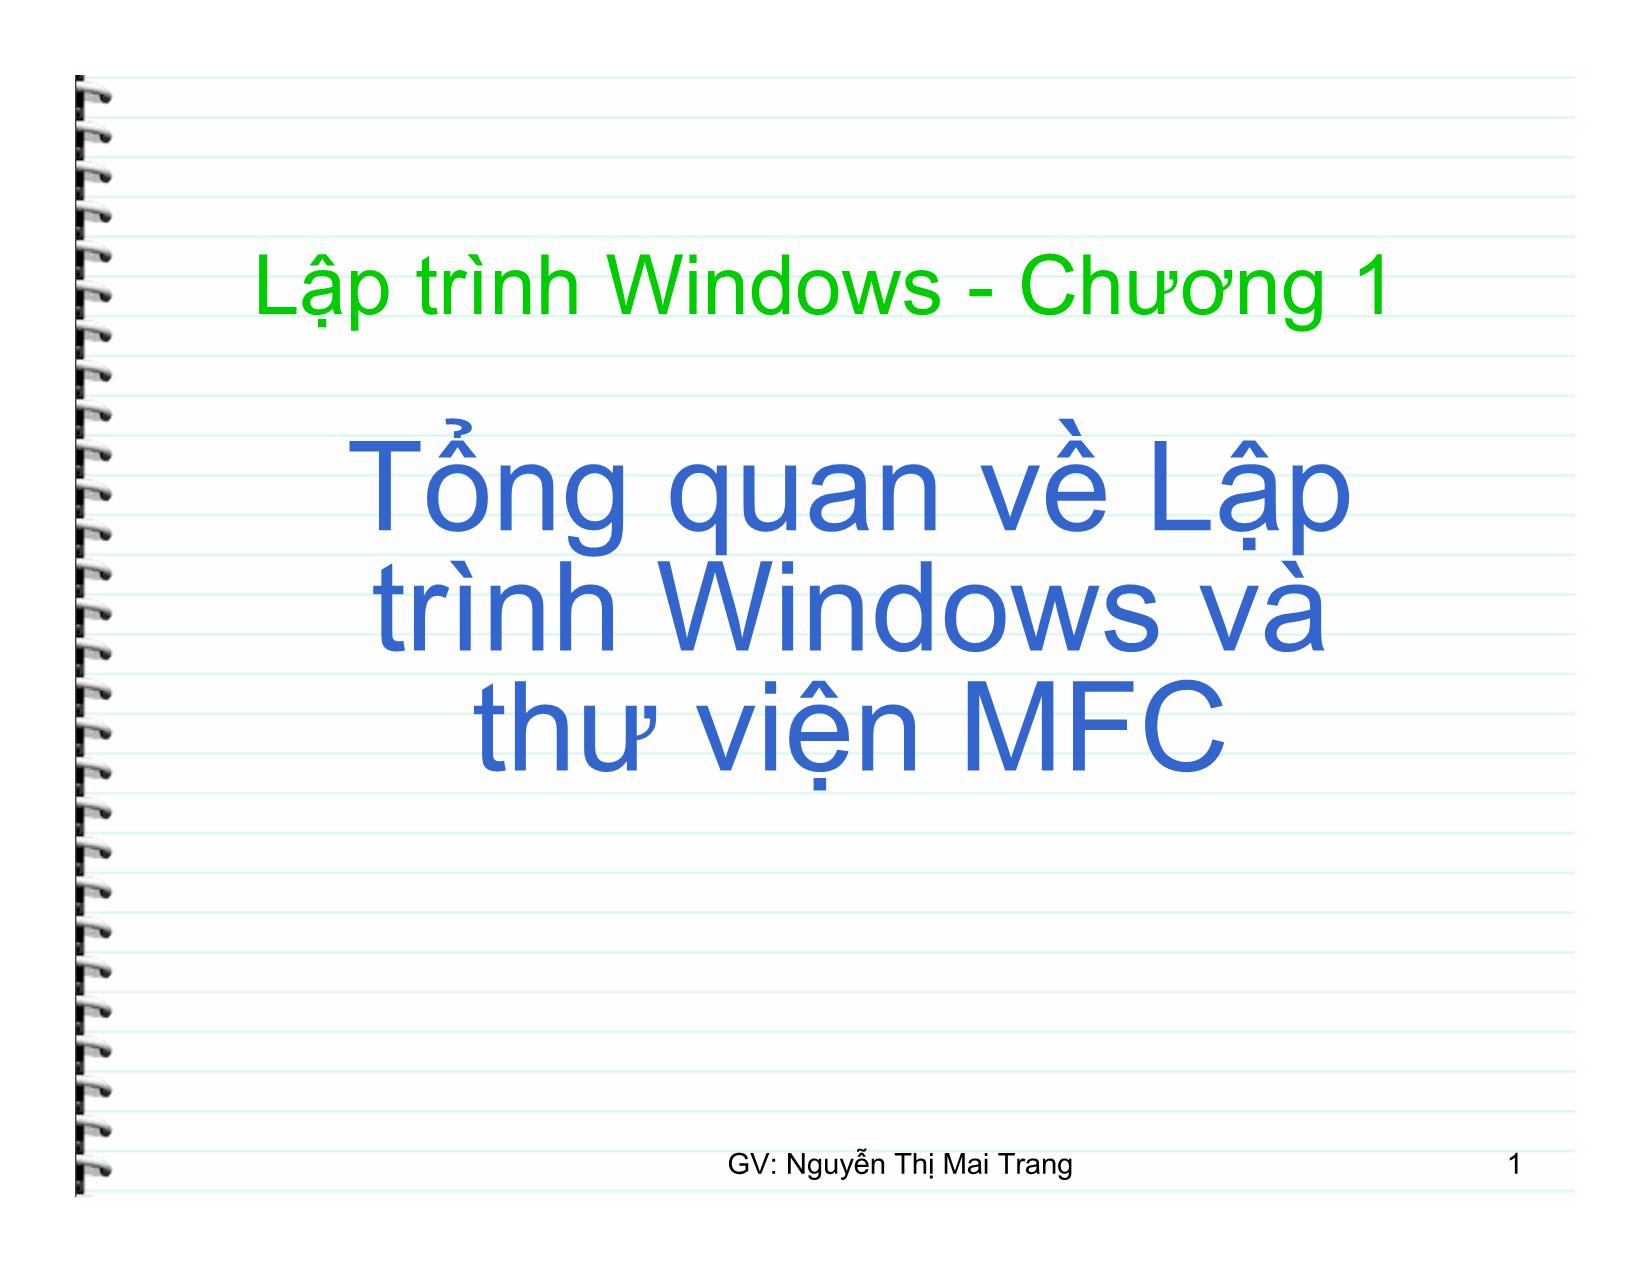 Lập trình Windows trang 1